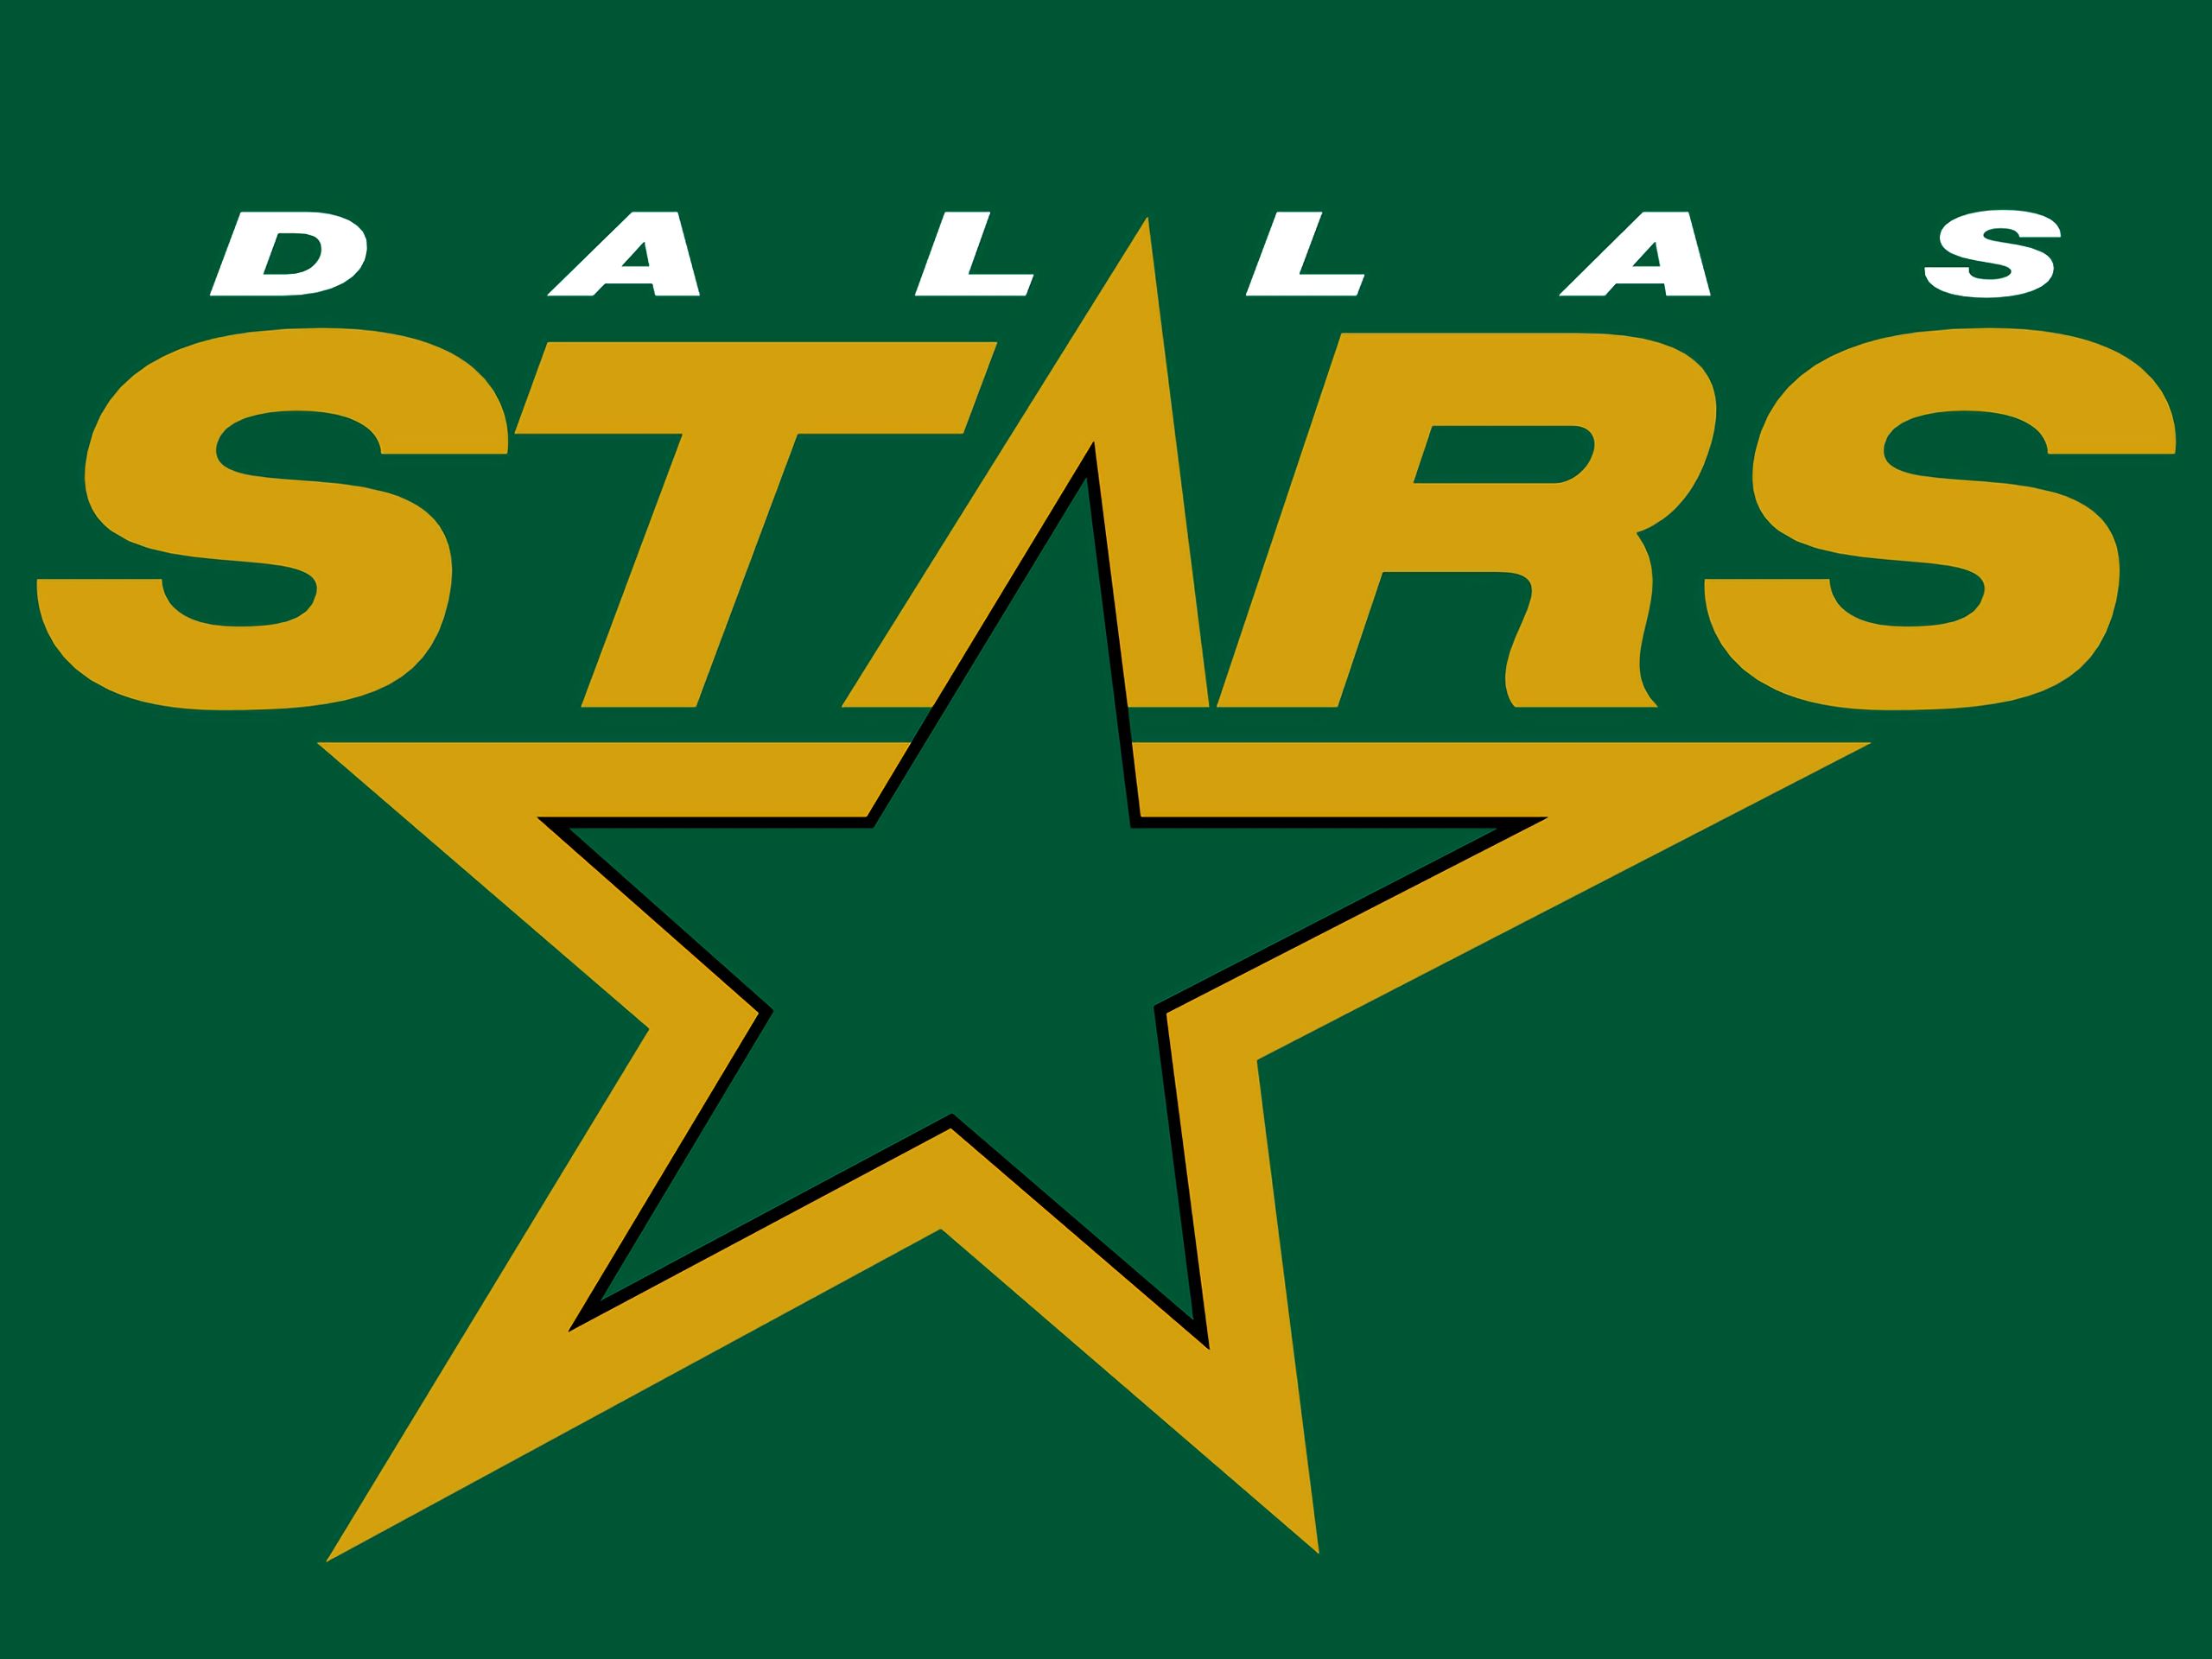 Dallas stars. НХЛ Даллас Старз. Даллас Старз логотип. НХЛ Даллас лого. Эмблема хоккейного клуба Даллас.